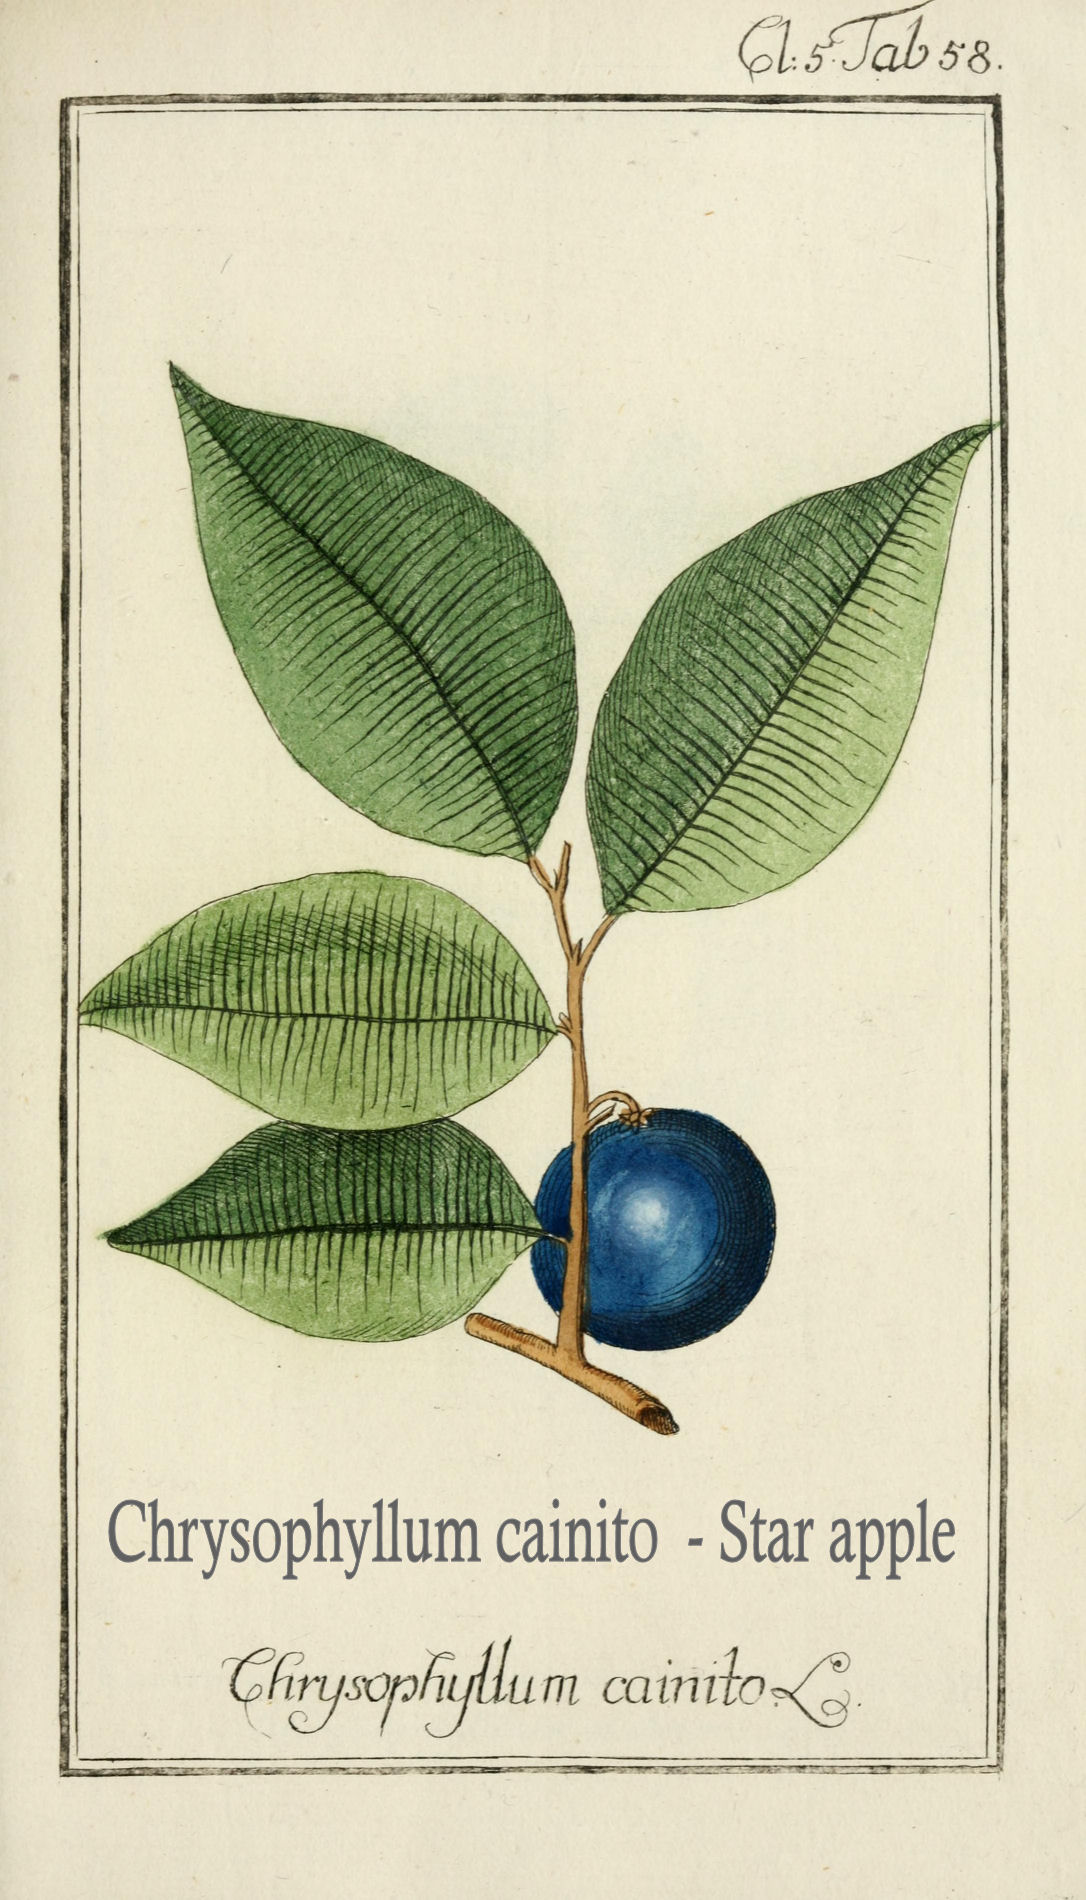 Chrysophyllum cainito - Star apple